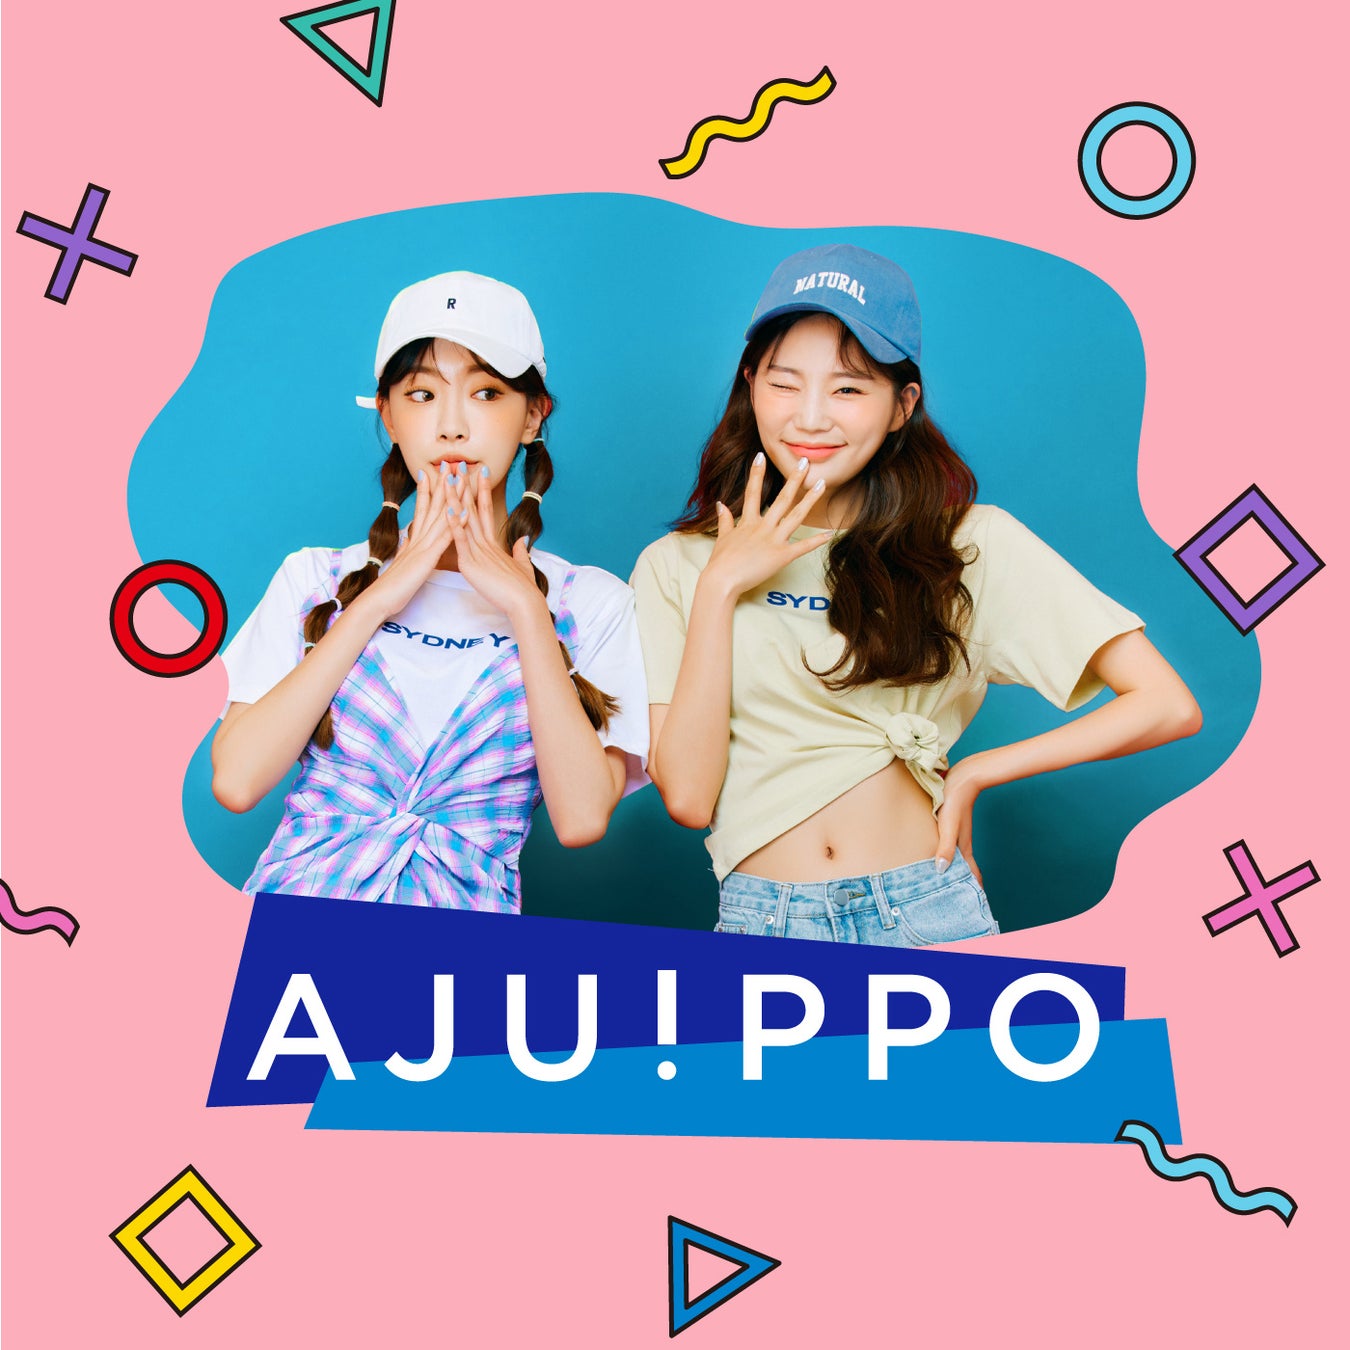 韓国の流行の可愛いを集めたz世代女子向けファッションブランド Ajuippo が誕生 ファッショントレンド